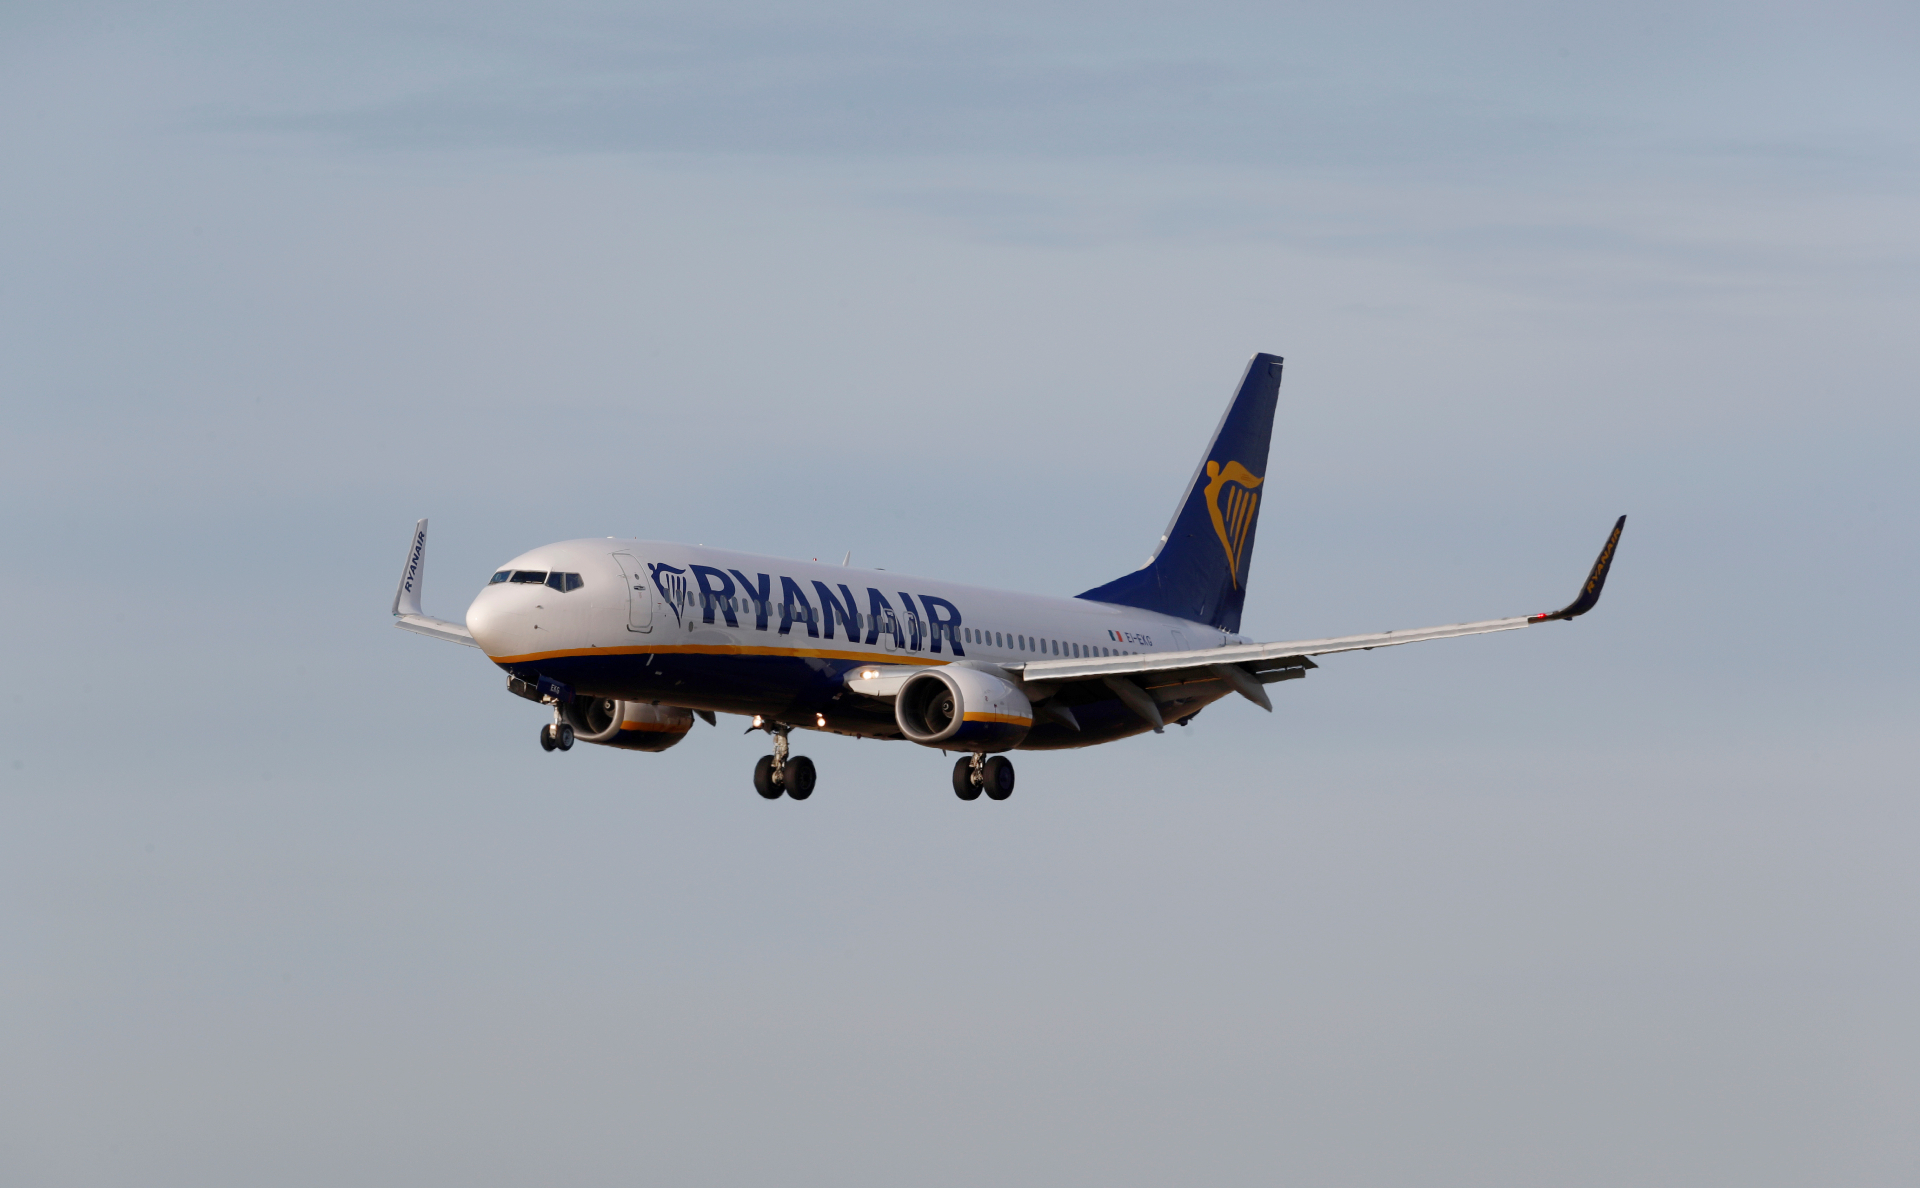 США обвинили власти Белоруссии в воздушном пиратстве из-за рейса Ryanair"/> 